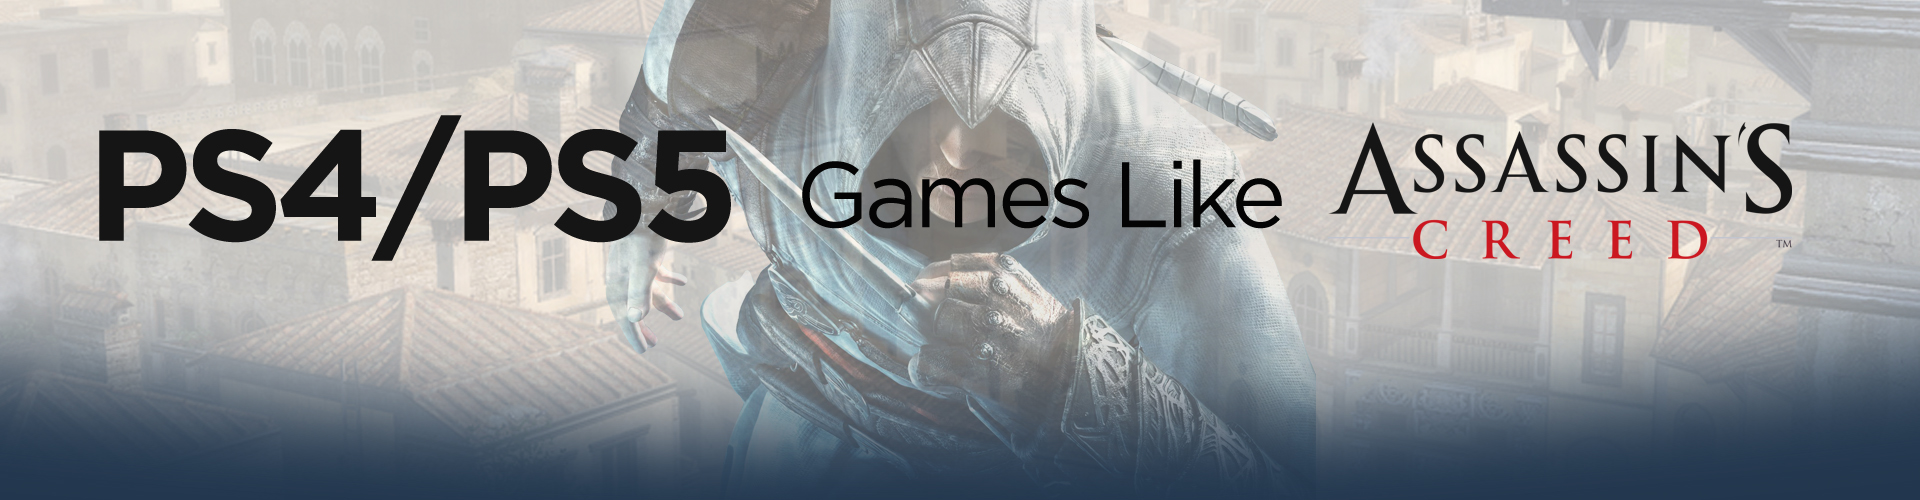 Los mejores juegos como Assassin's Creed para PS4/PS5